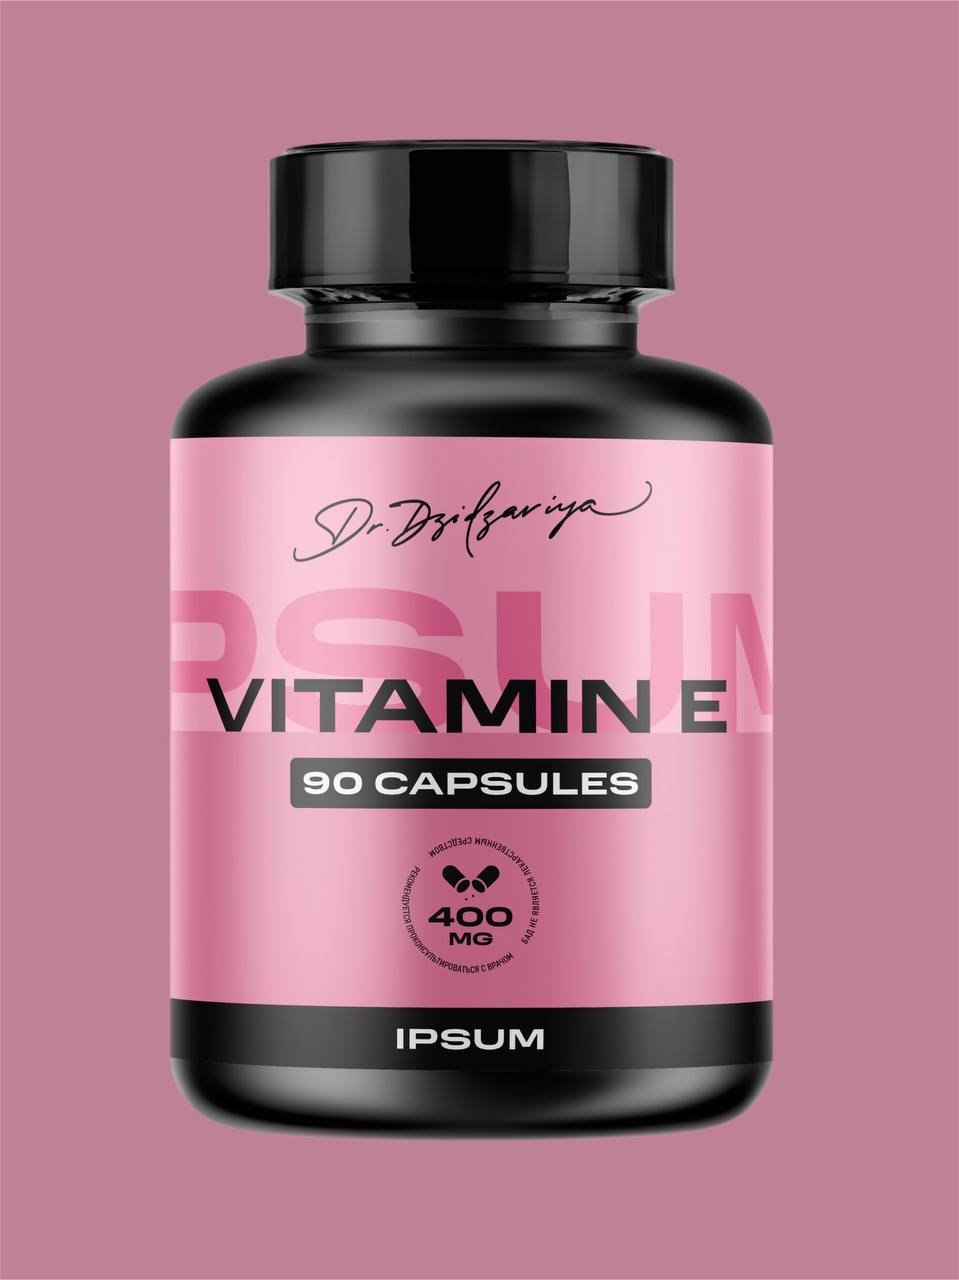 Купить Витамин Е 400 МЕ 60 капсул, Витамин Е, Ipsum Vitamin 400 МЕ токоферол ацетат для укрепление иммунитета, 60 капсул